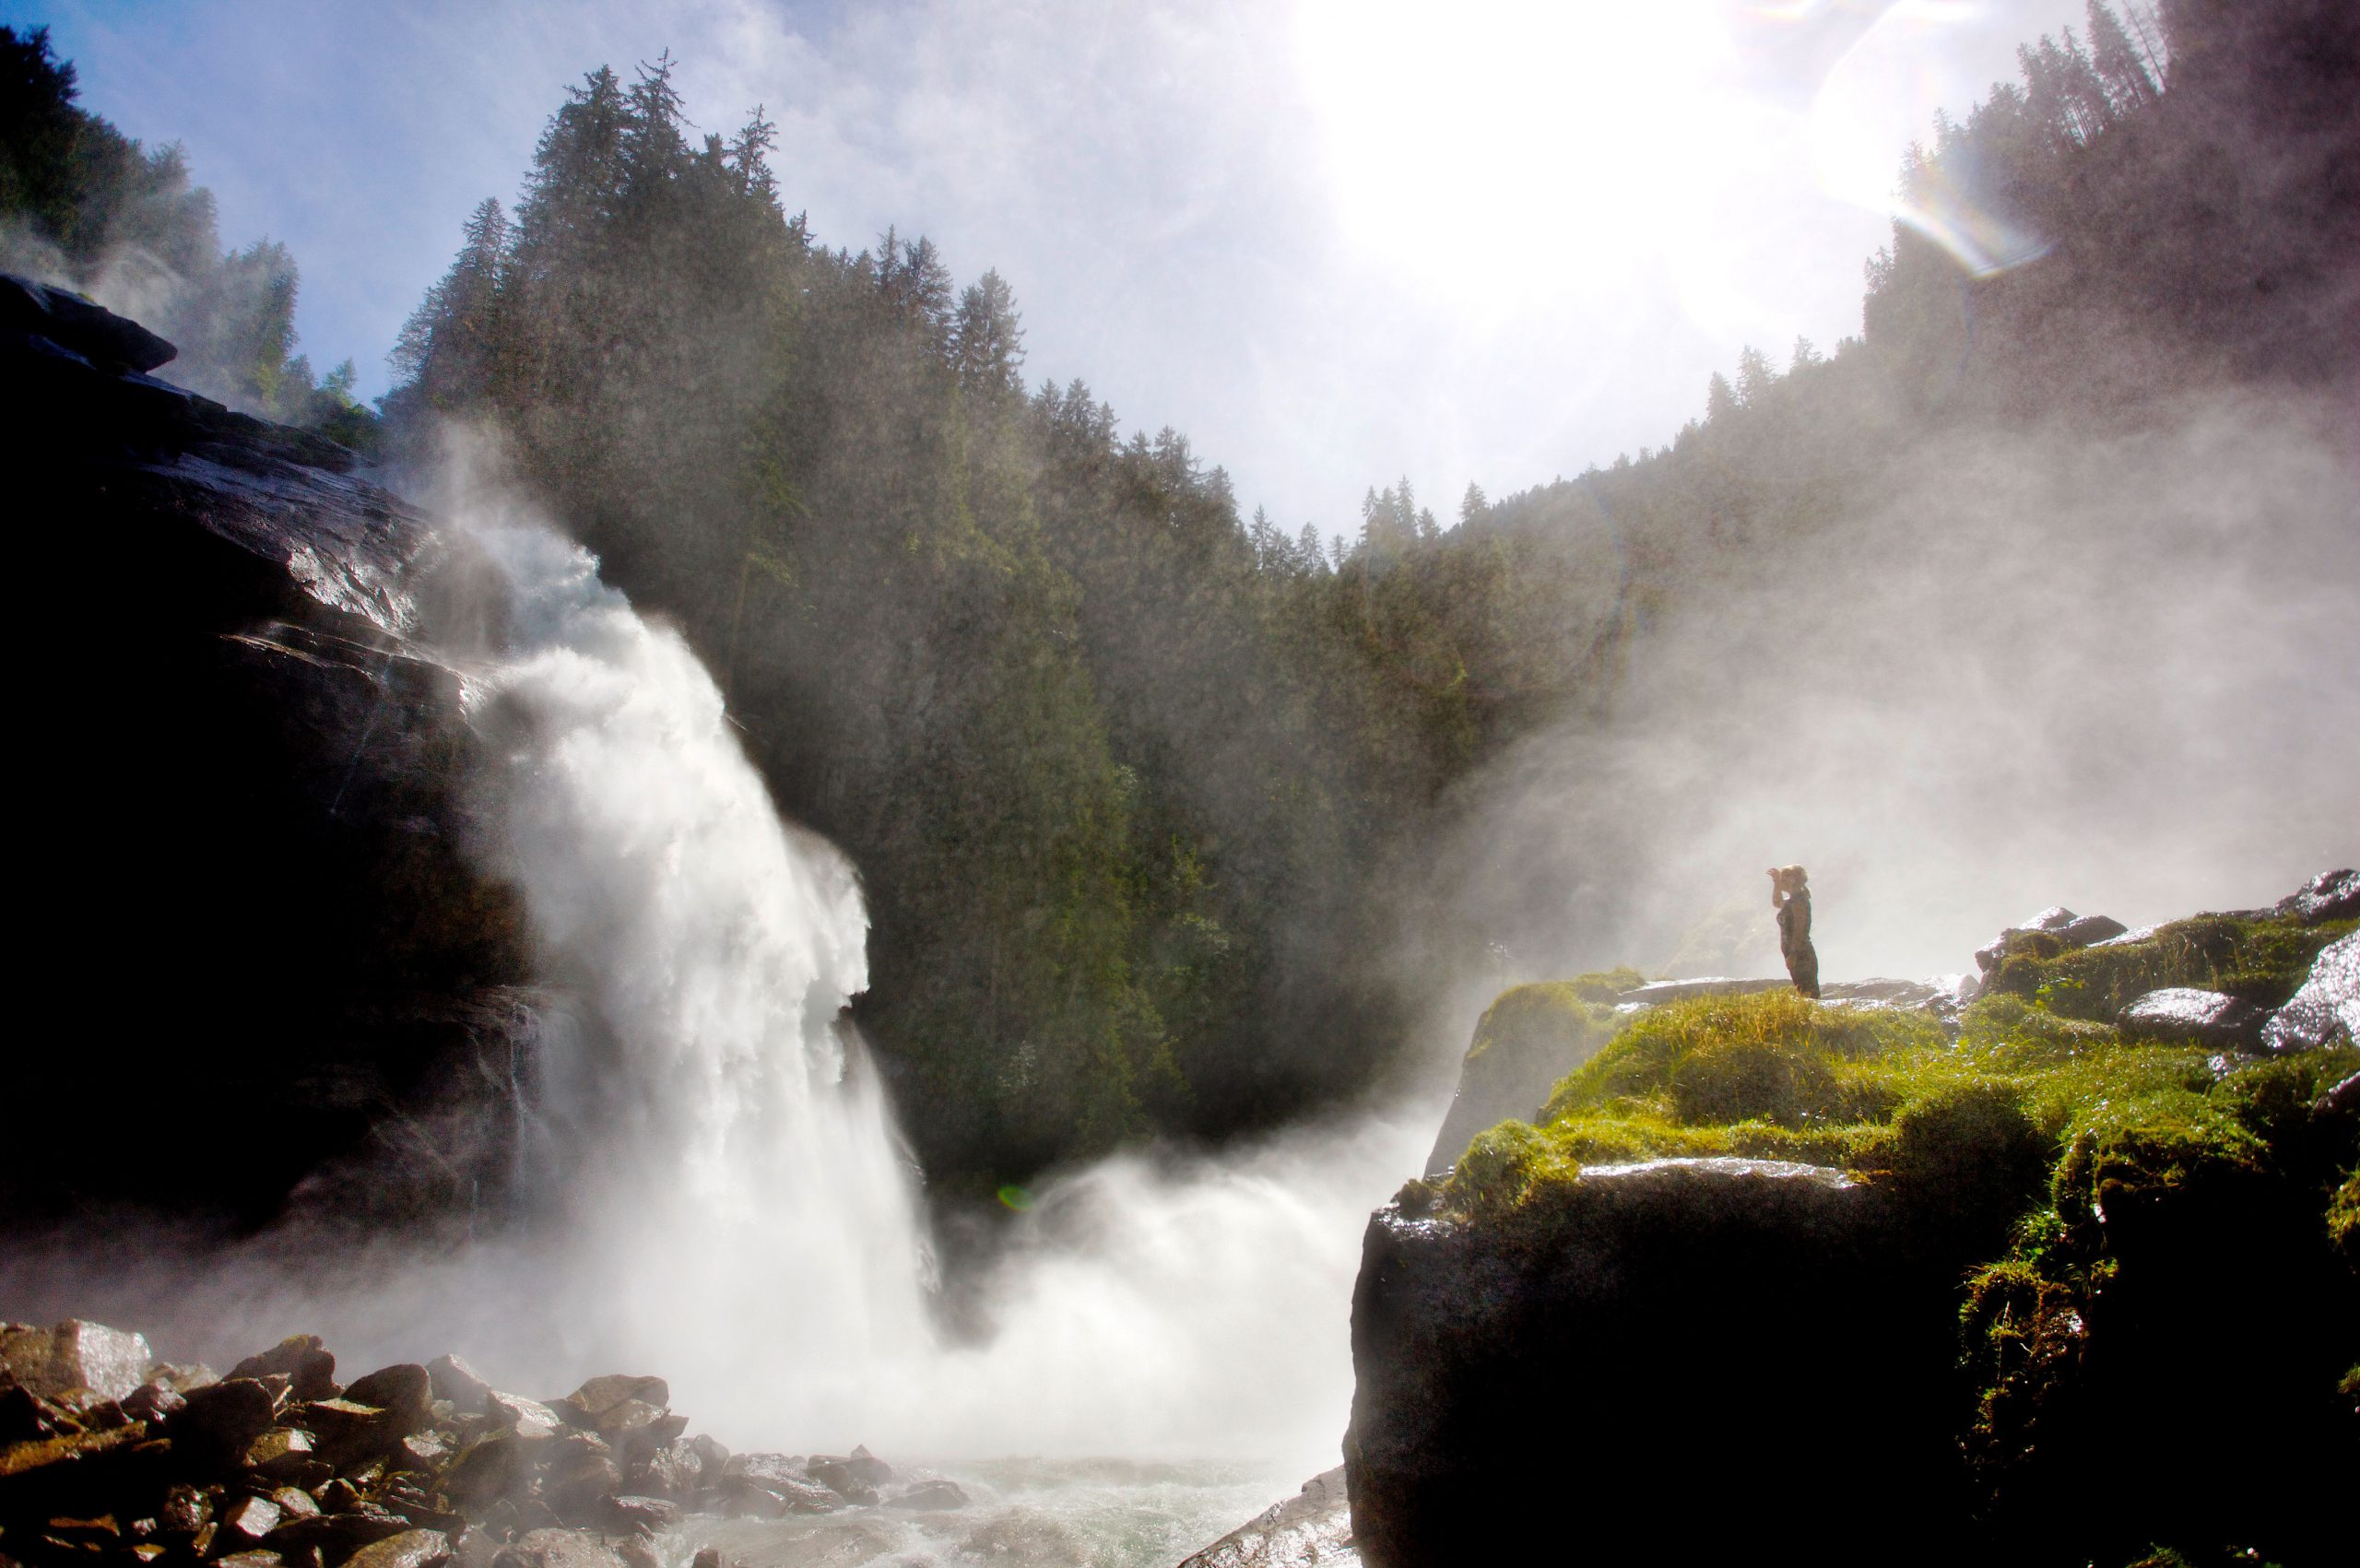 le cascate di Krimml nel Parco Nazionale Alti Tauri meritano una visita